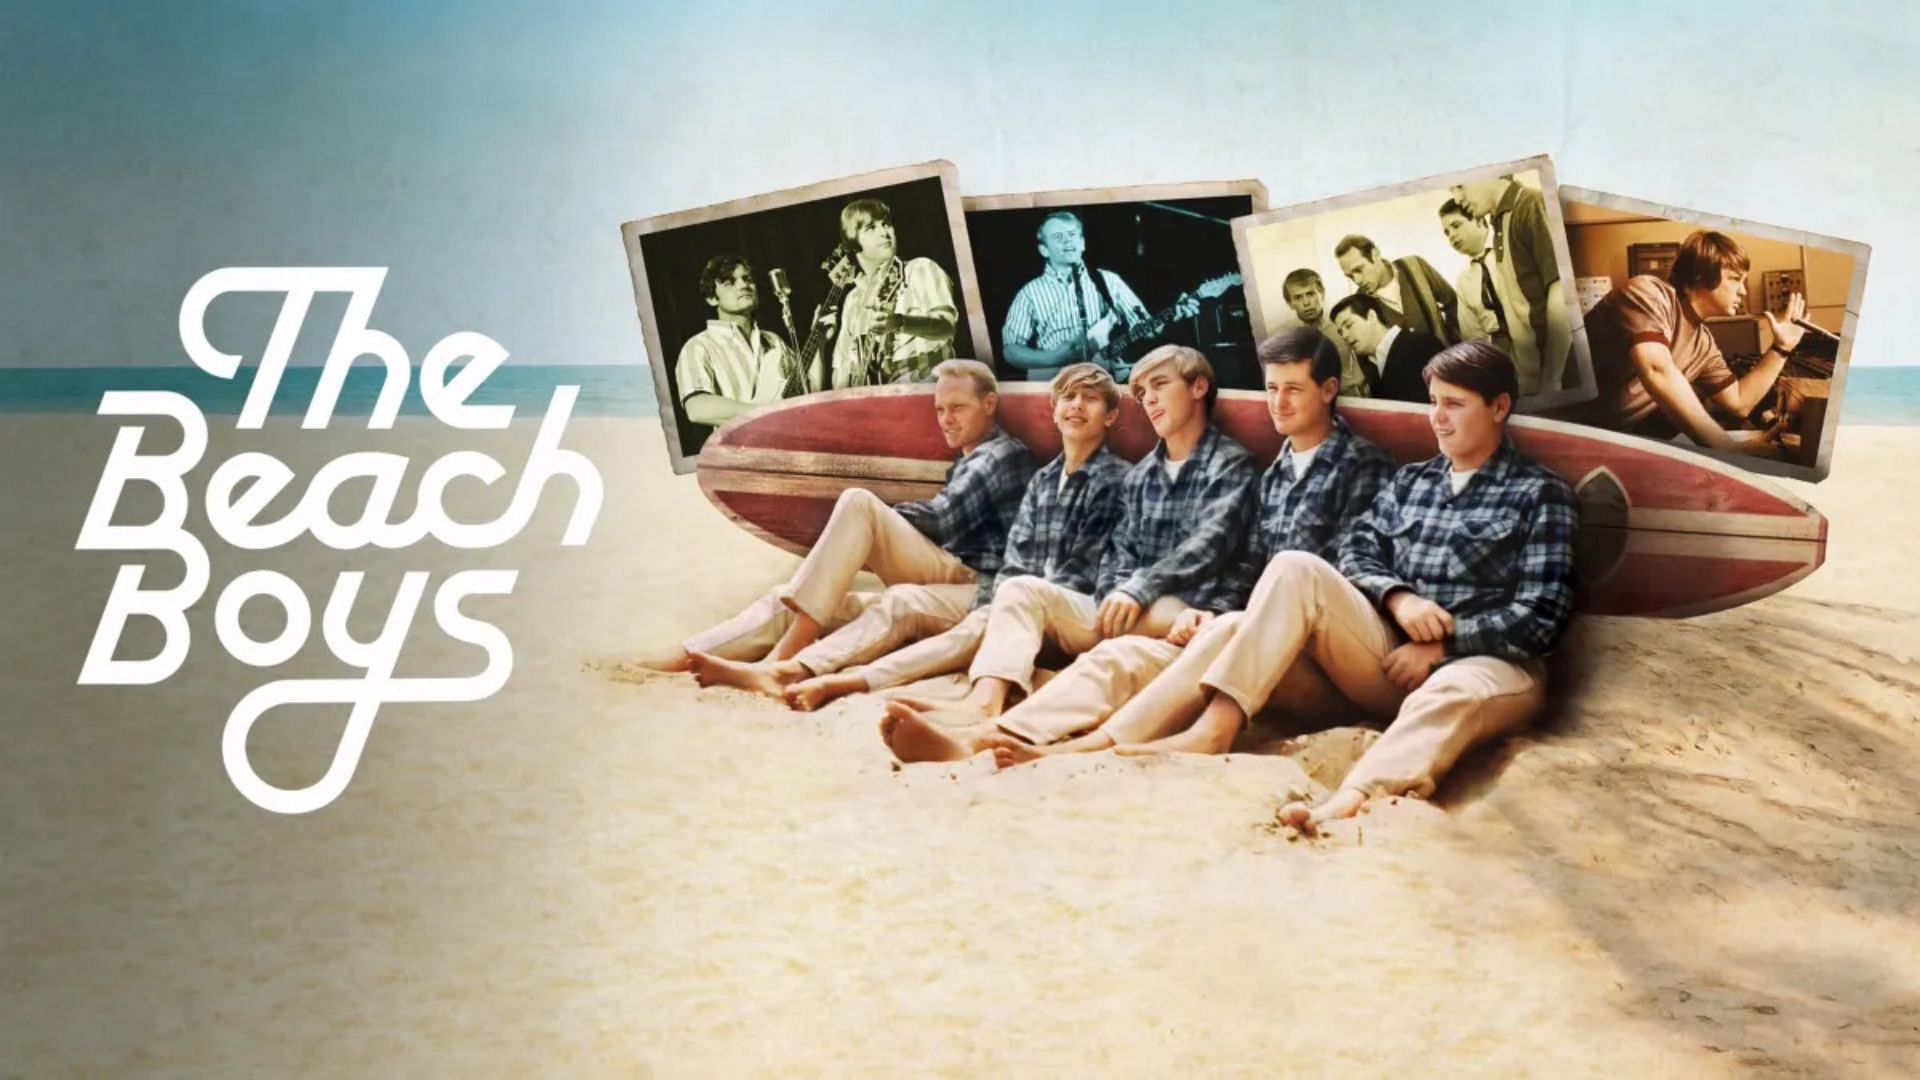 The Beach Boys on Disney+